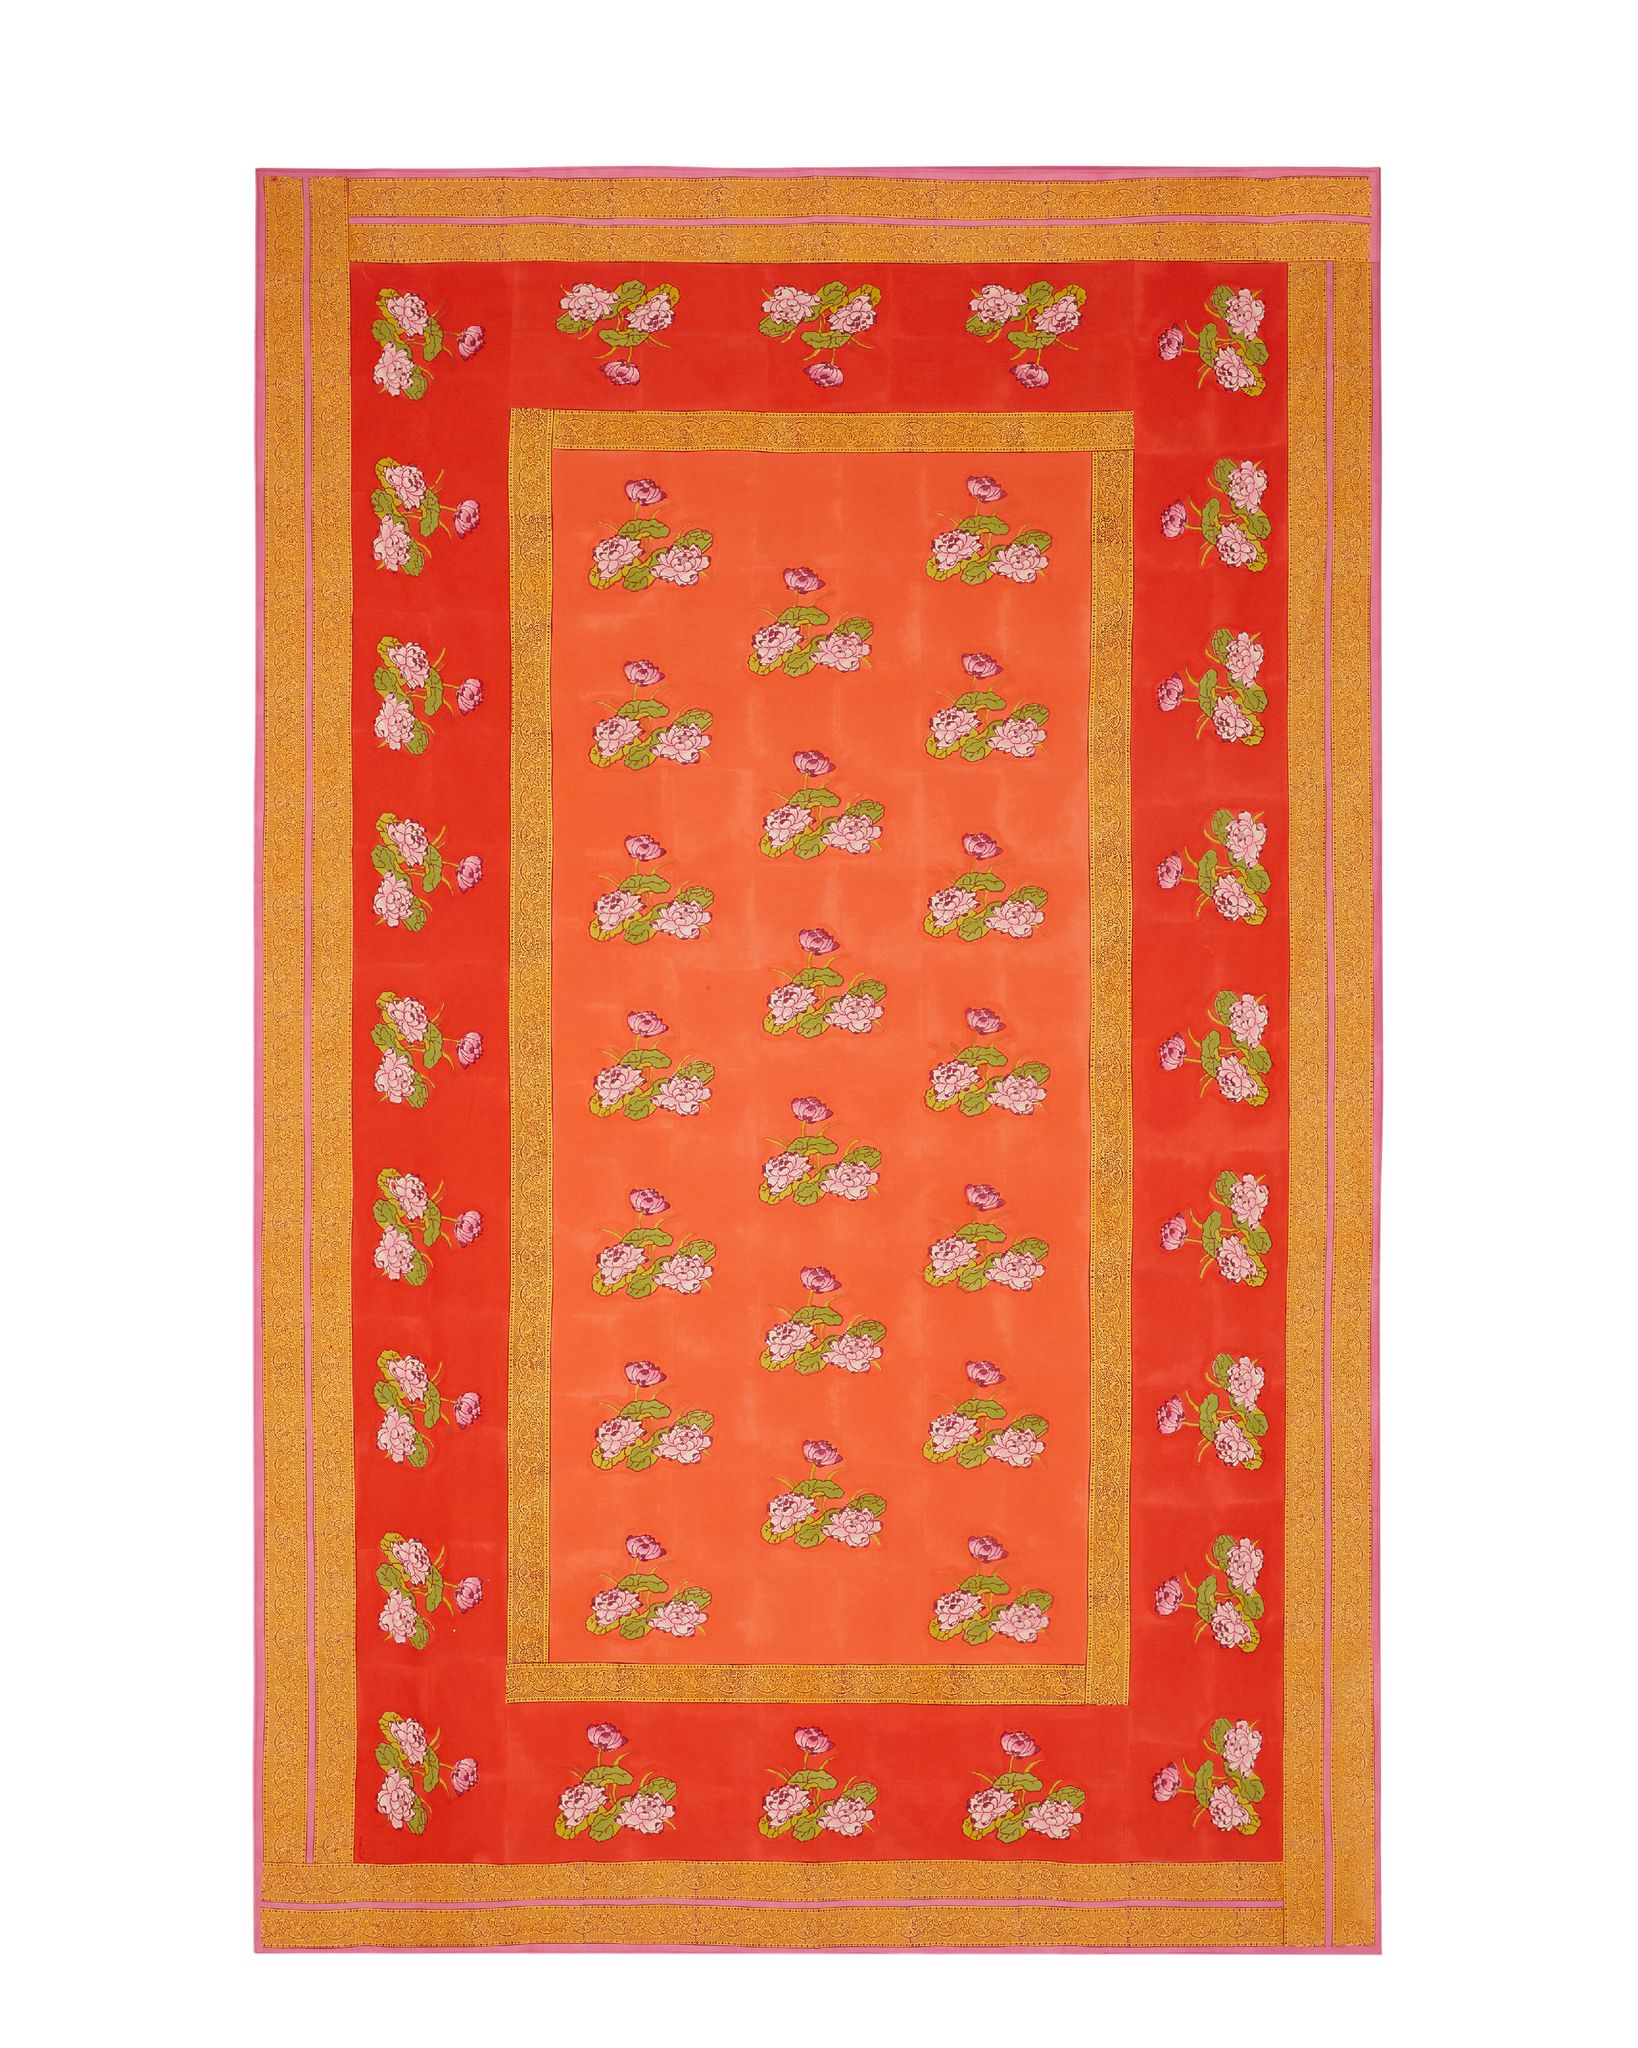 Tea Flower Tablecloth